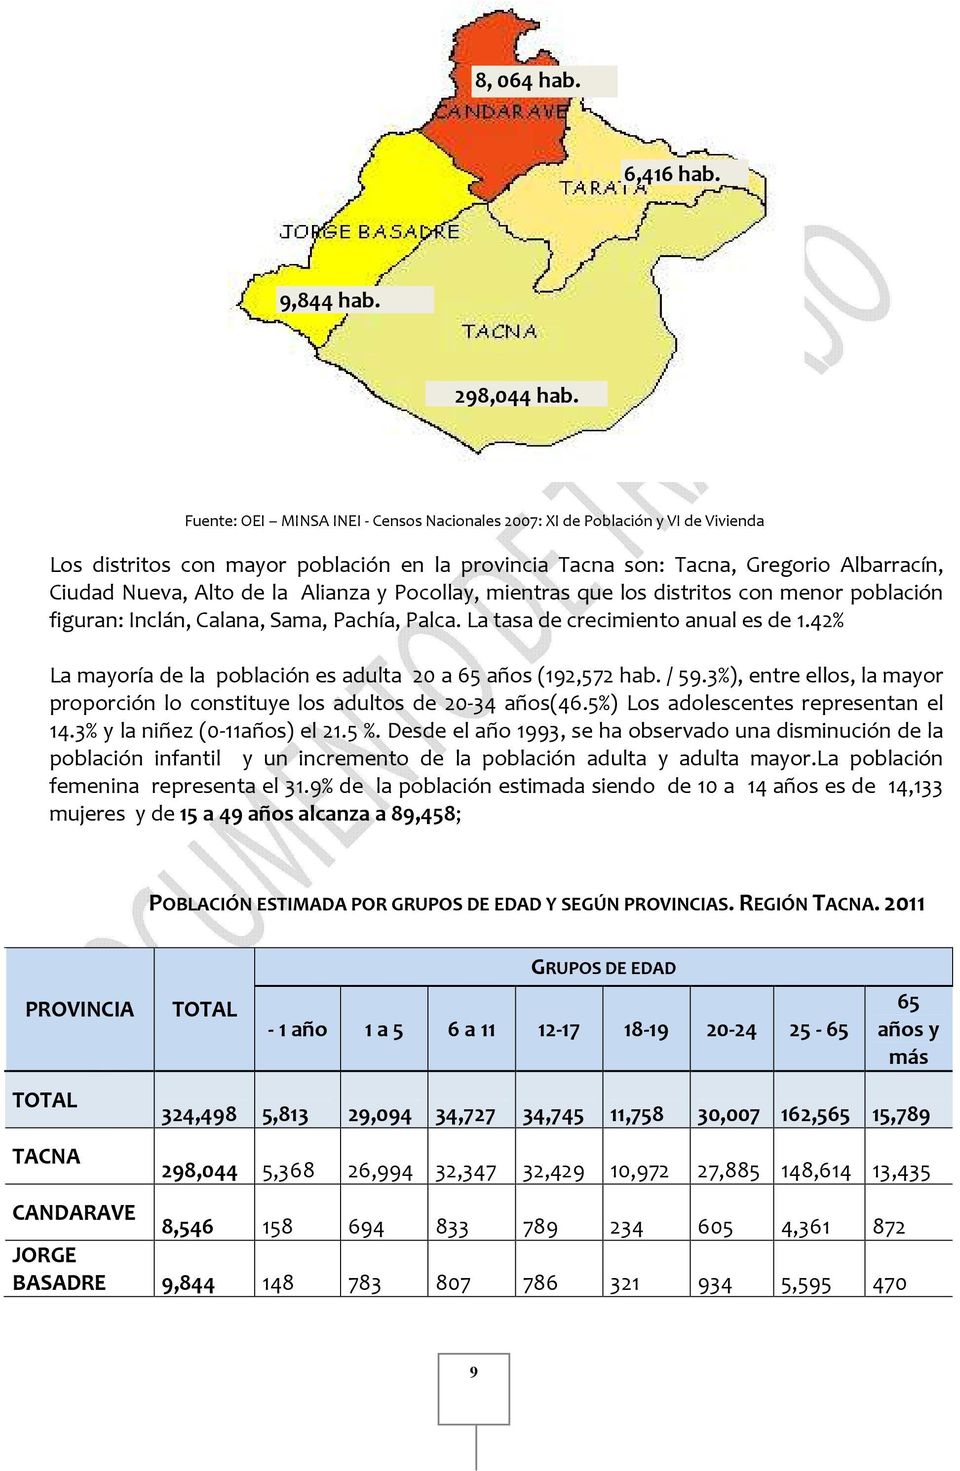 Alianza y Pocollay, mientras que los distritos con menor población figuran: Inclán, Calana, Sama, Pachía, Palca. La tasa de crecimiento anual es de 1.